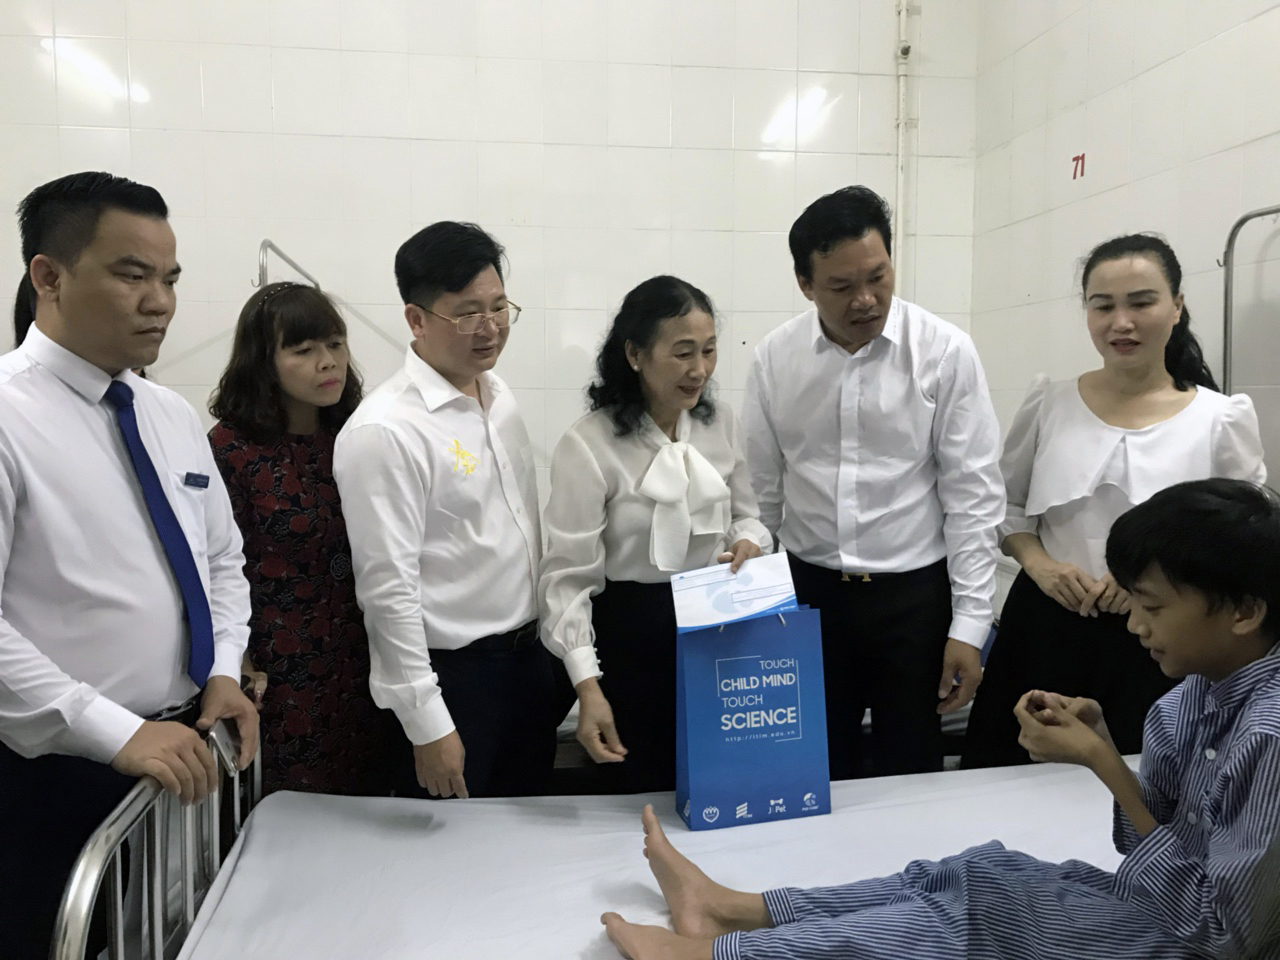 Gần 180 triệu đồng đến với trẻ em khuyết tật và trẻ em nghèo hiếu học tại Quảng Ninh